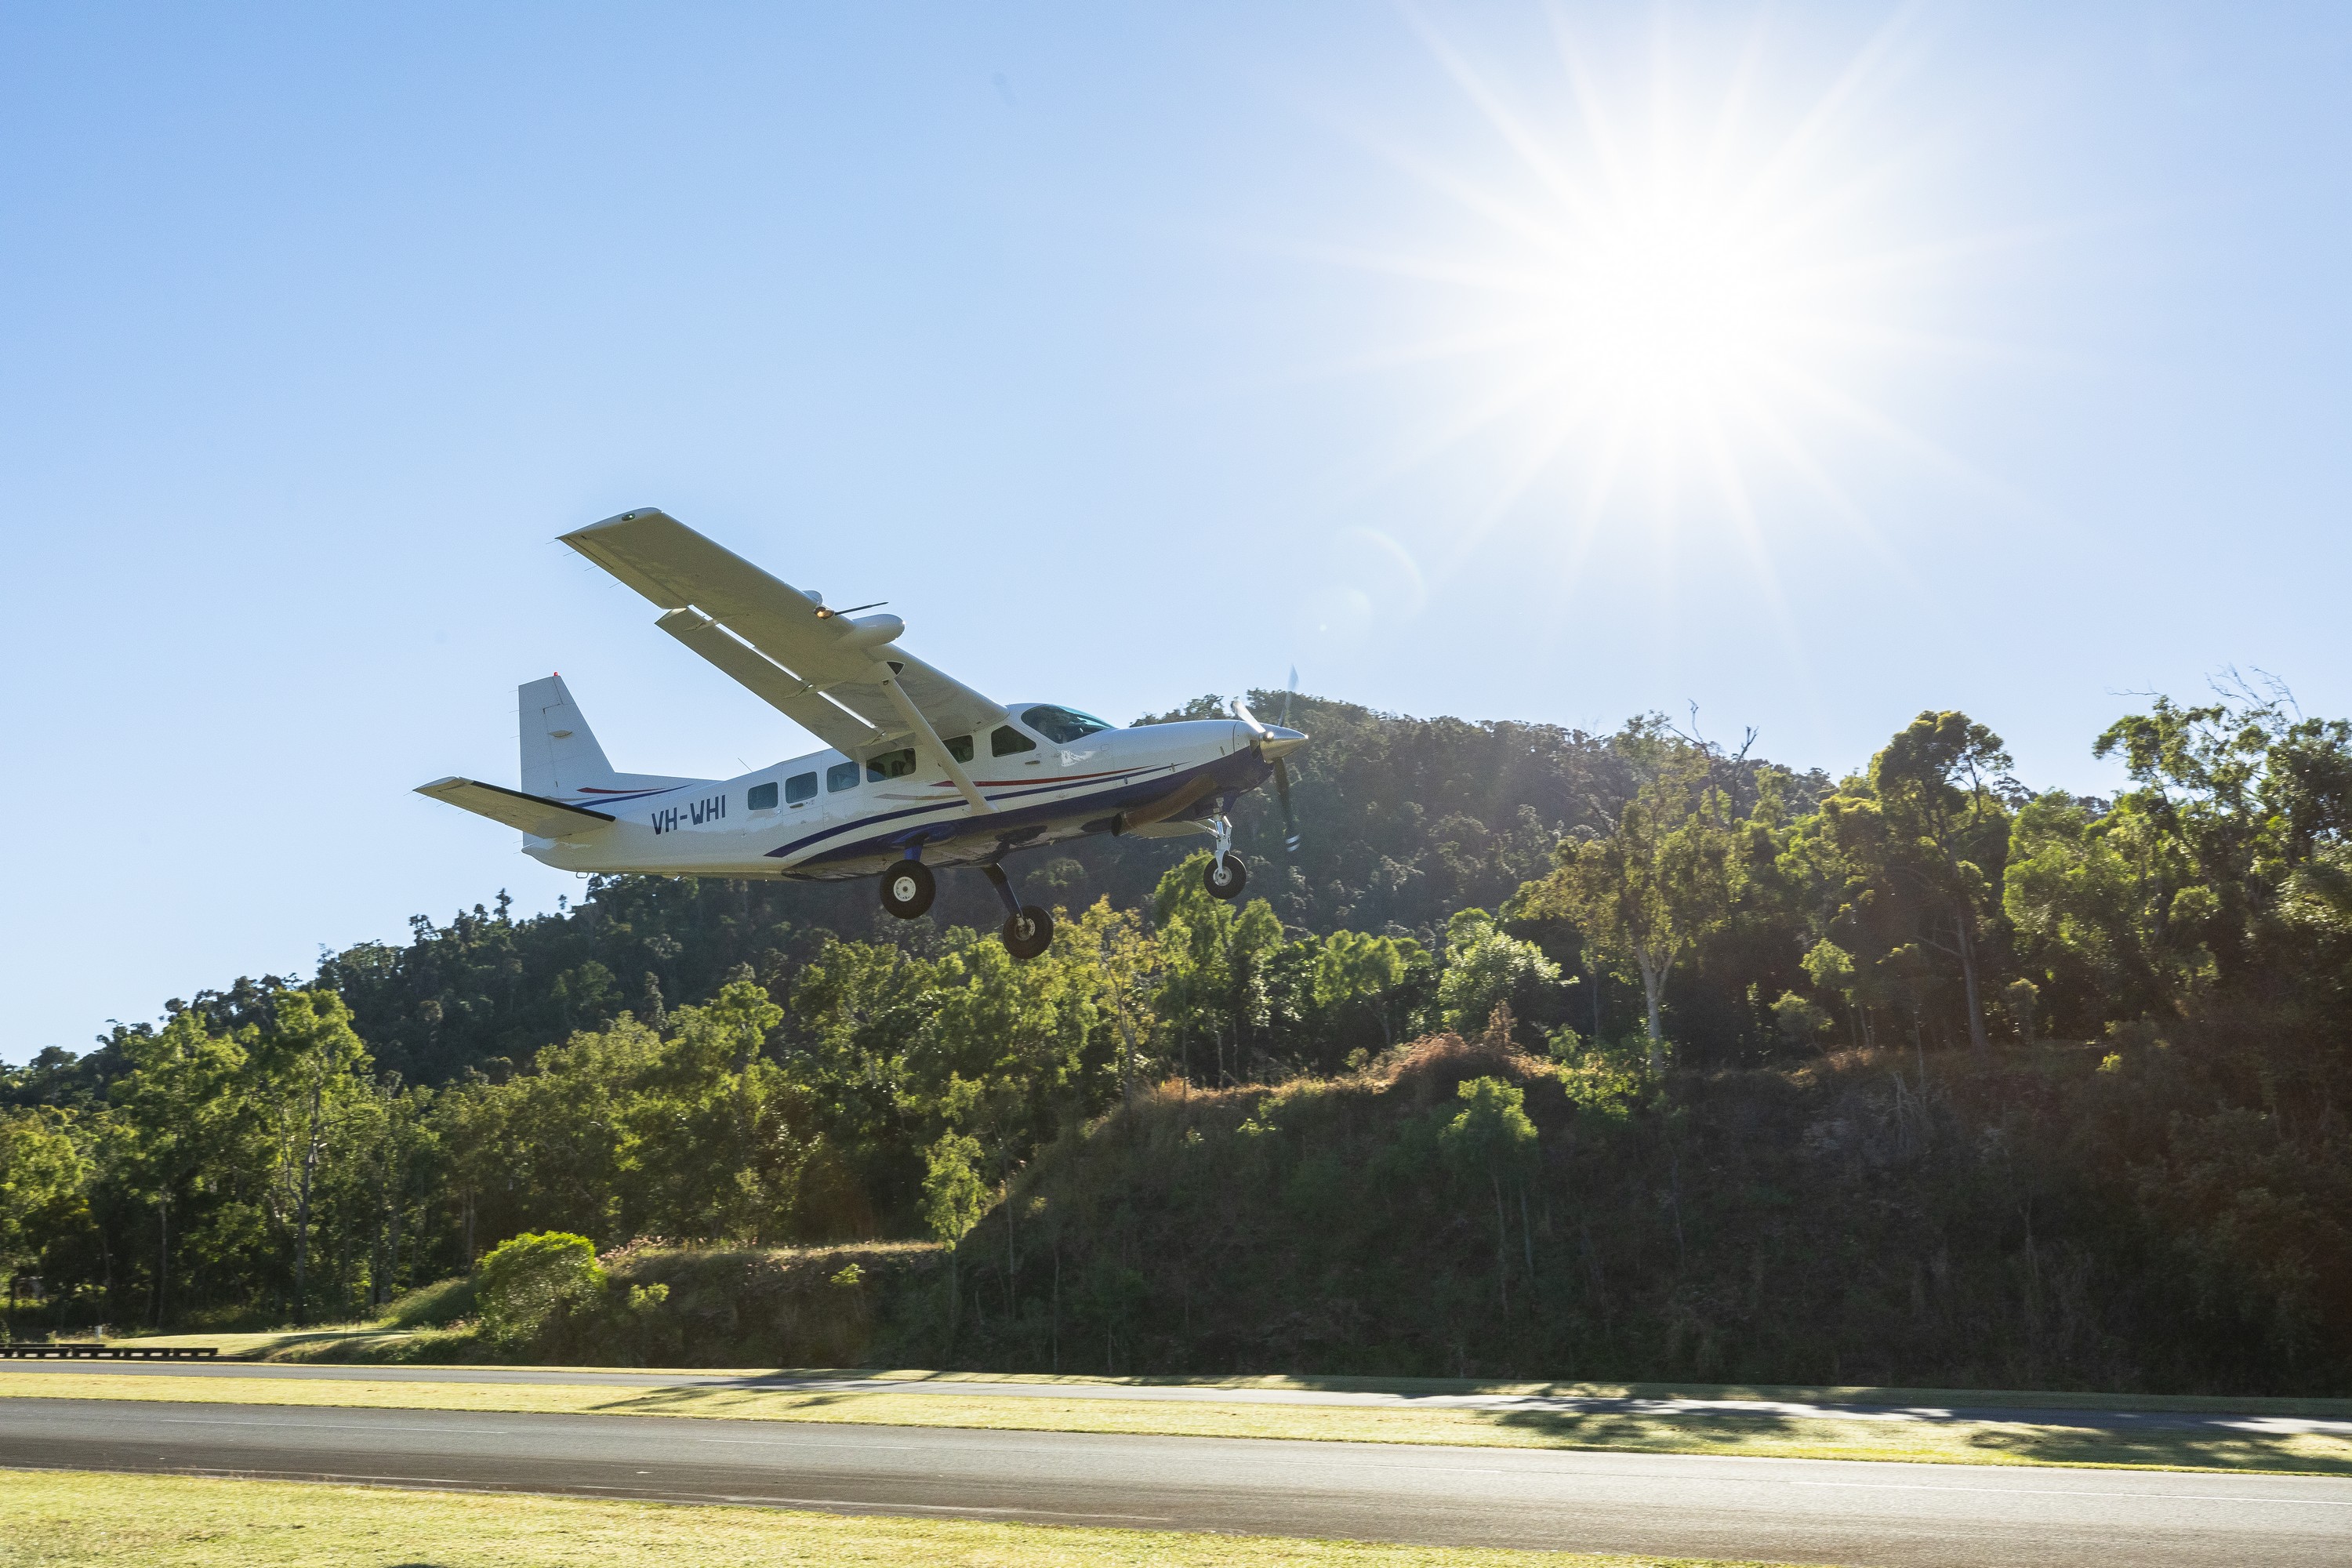 Whitsundays Scenic Flight- Take off